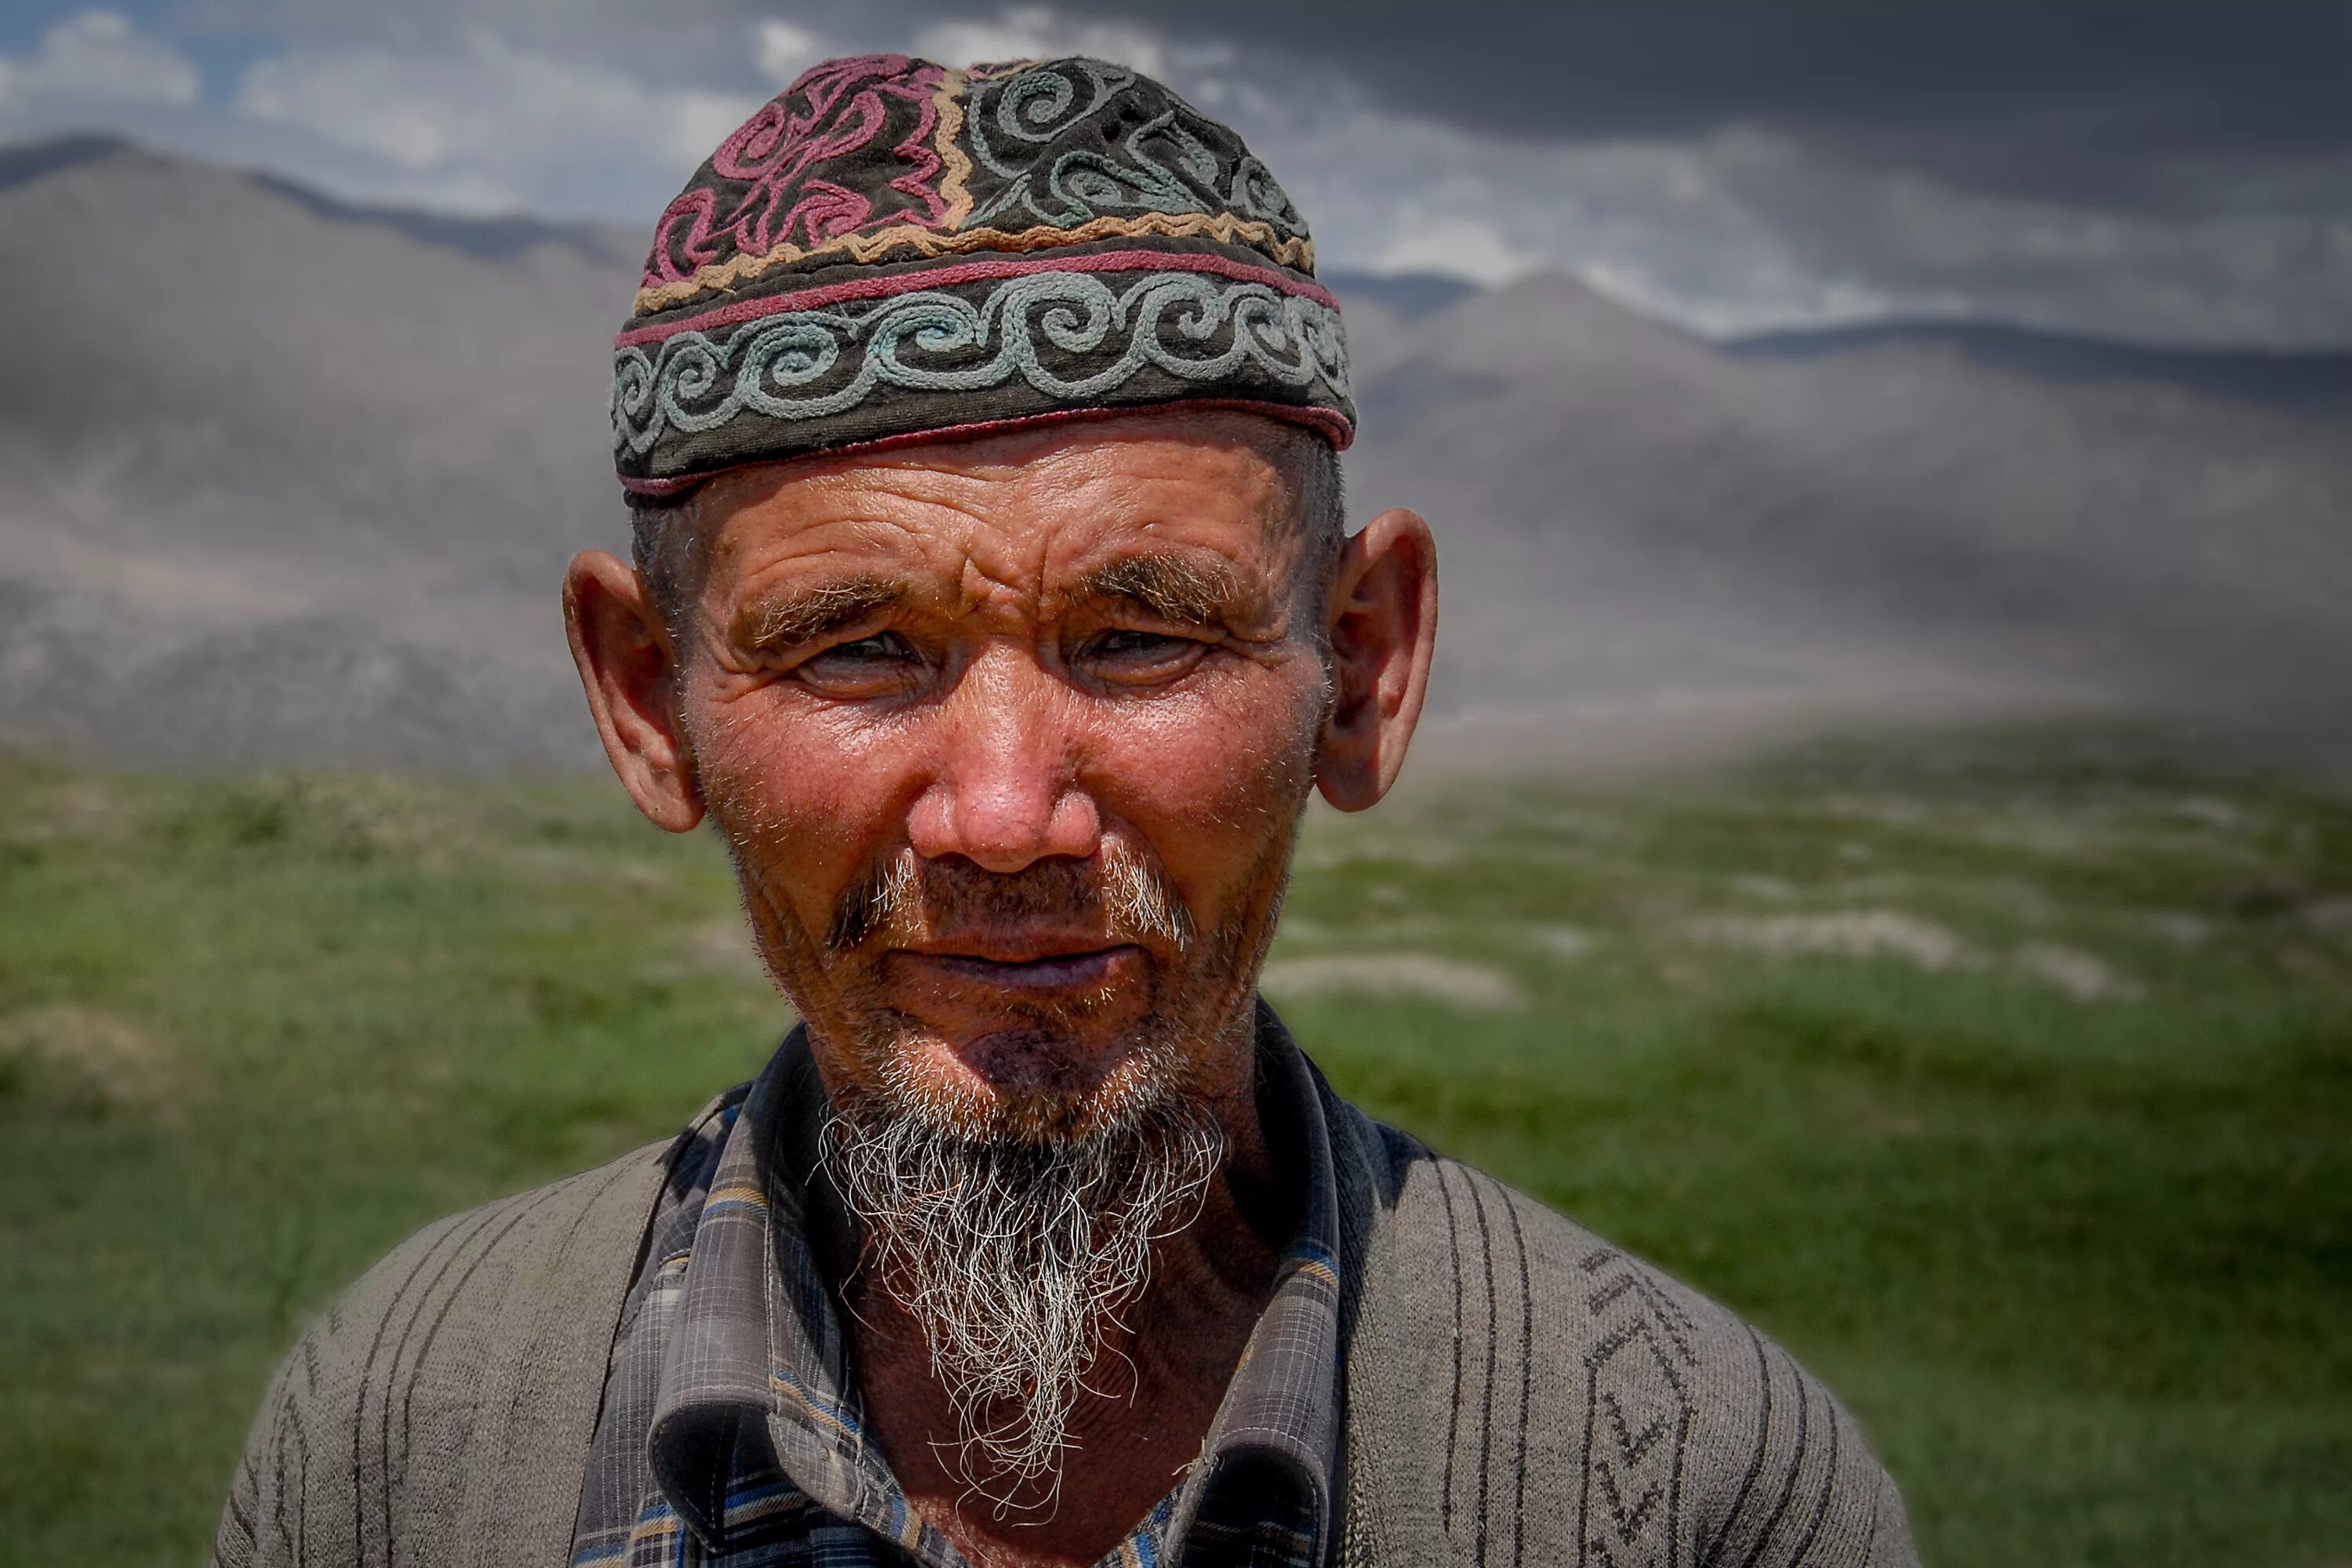 Татар лицо. Казахские люди. Лицо казаха. Монгольское лицо мужчины. Kazakh people